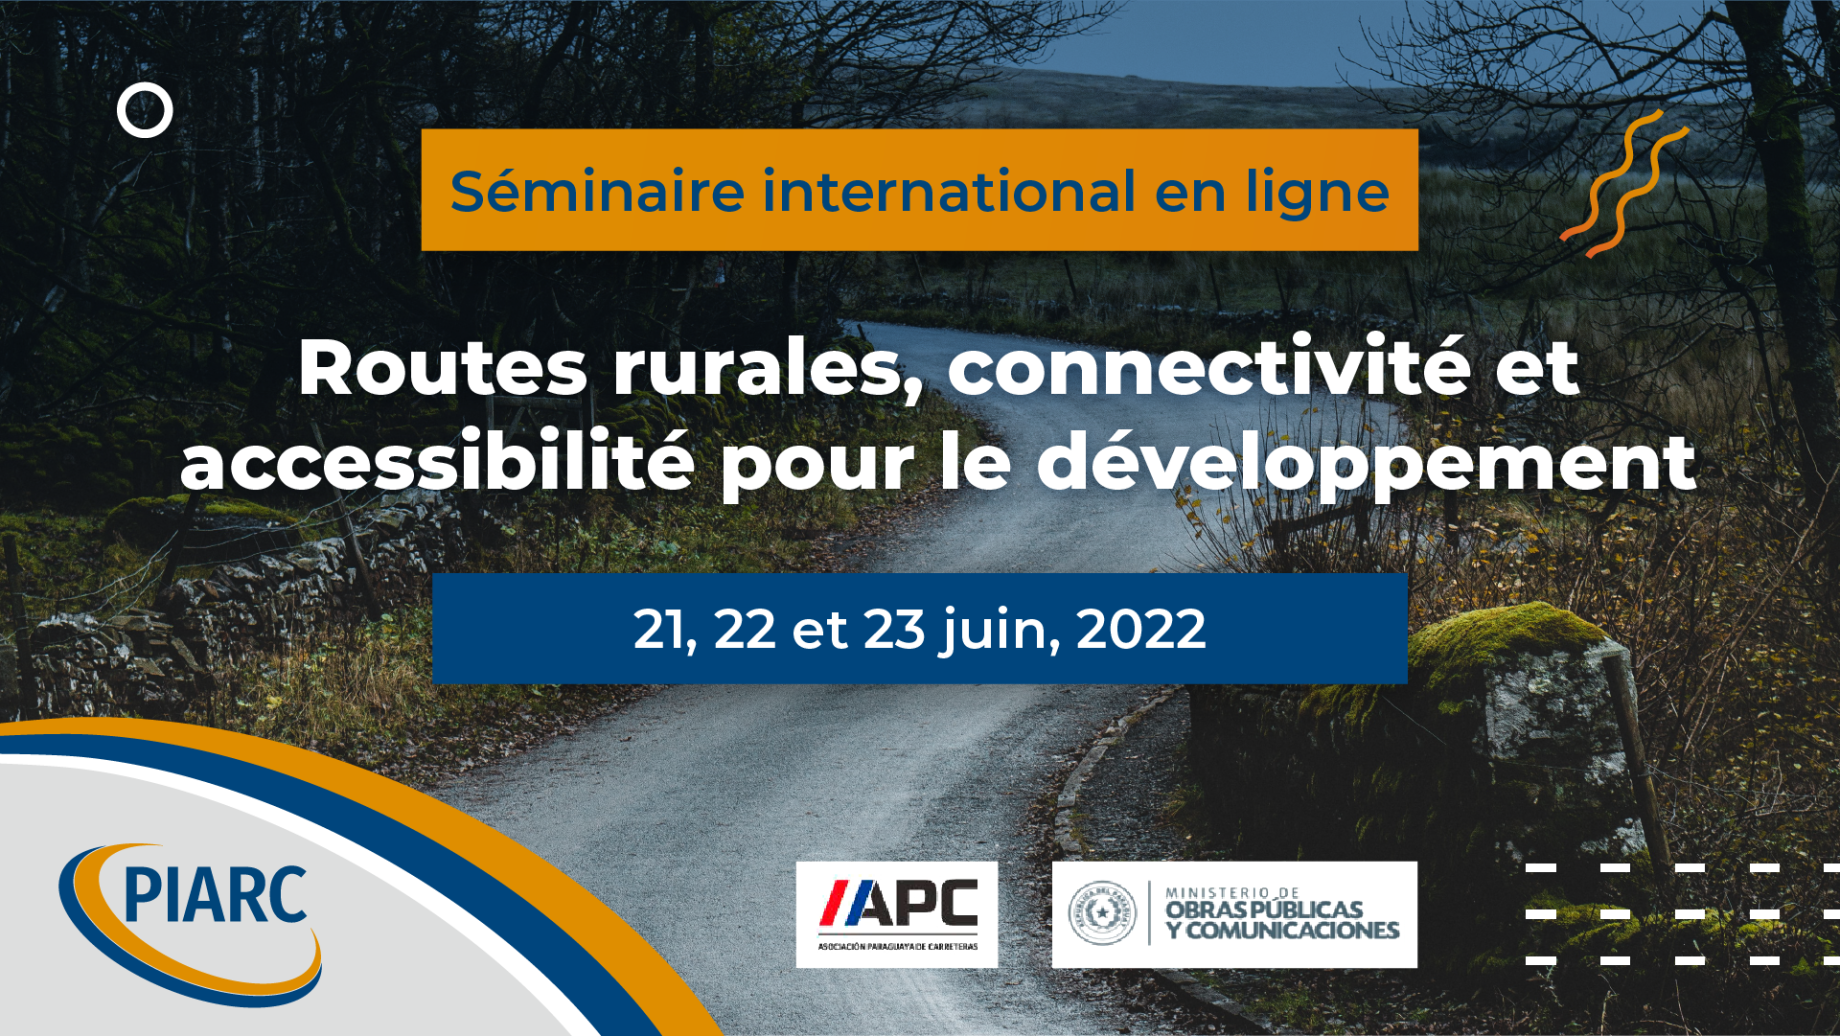 PIARC International Seminar Online June 21-23 2022